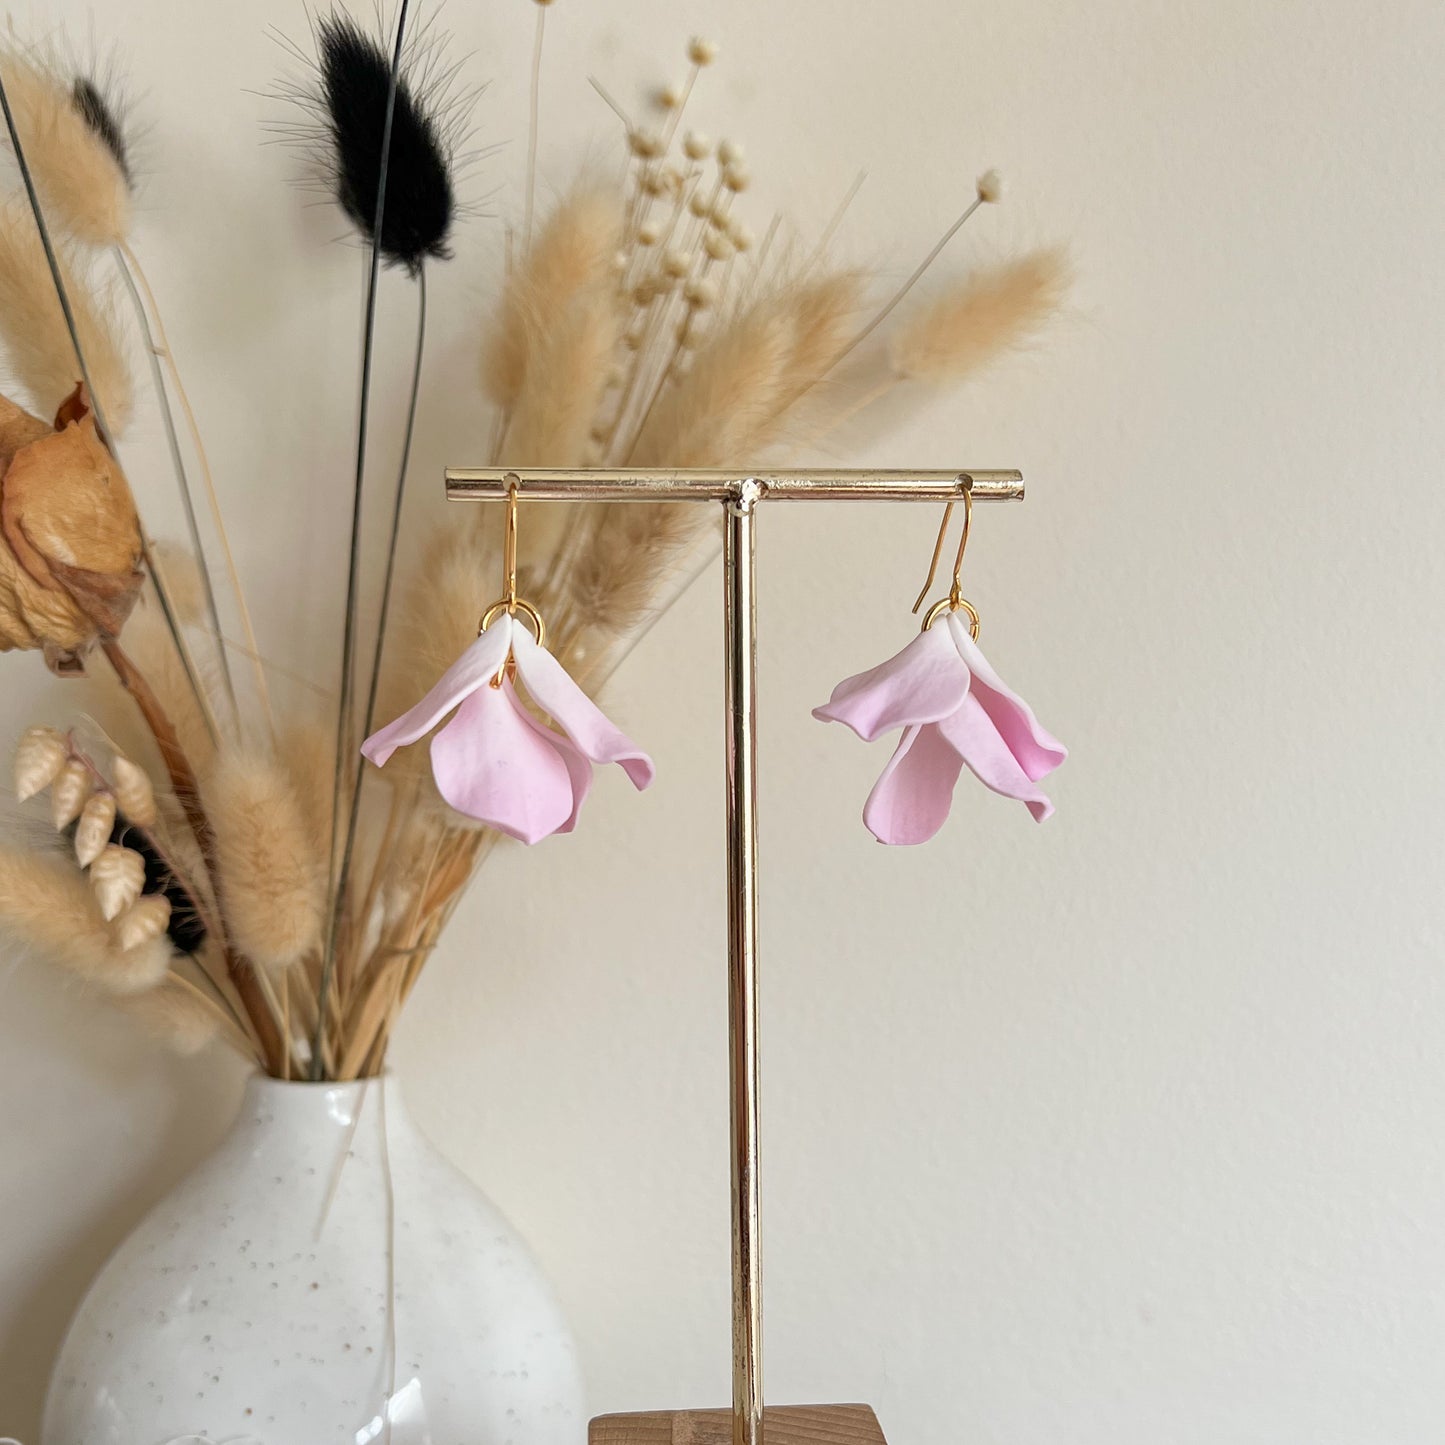 DELEN MULTI | medium multiple rose petal hook earrings in pale pink ombre